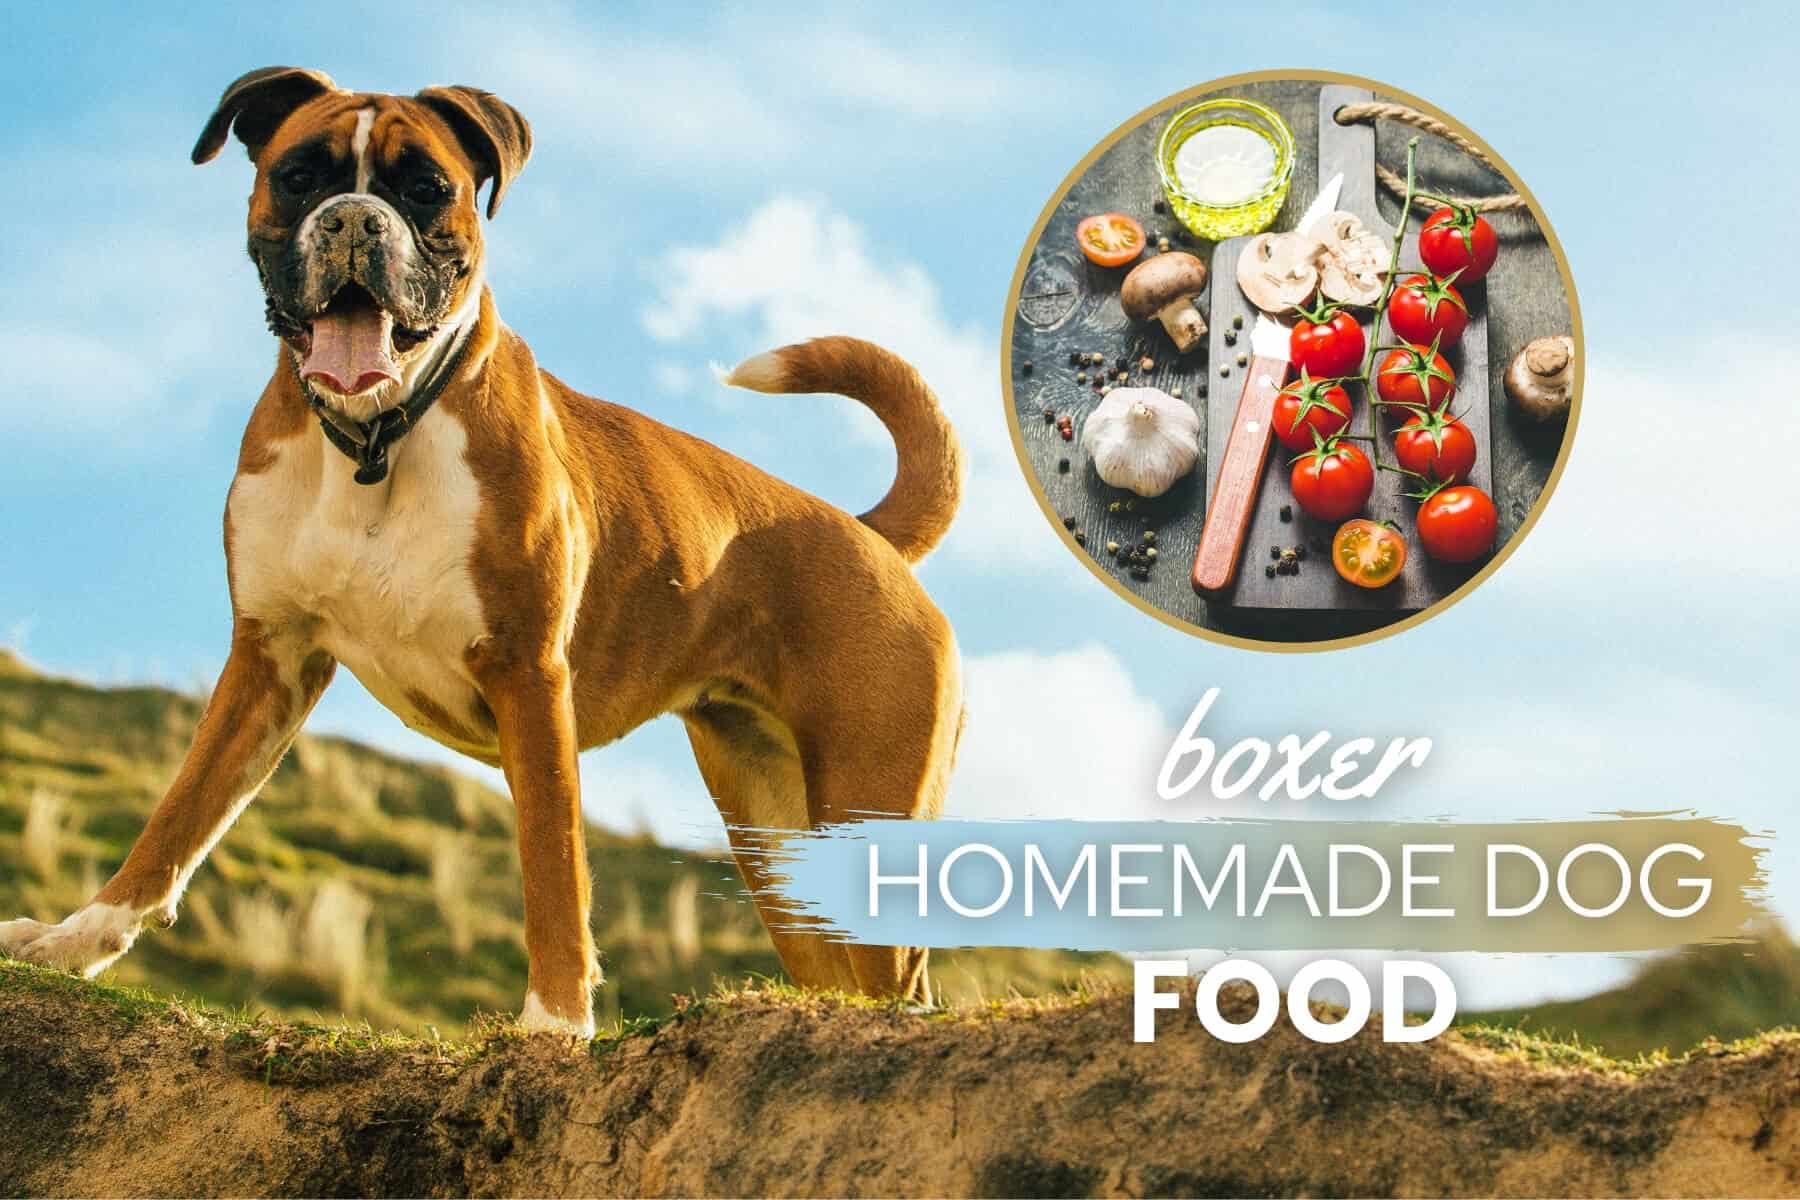 boxer dog homemade food